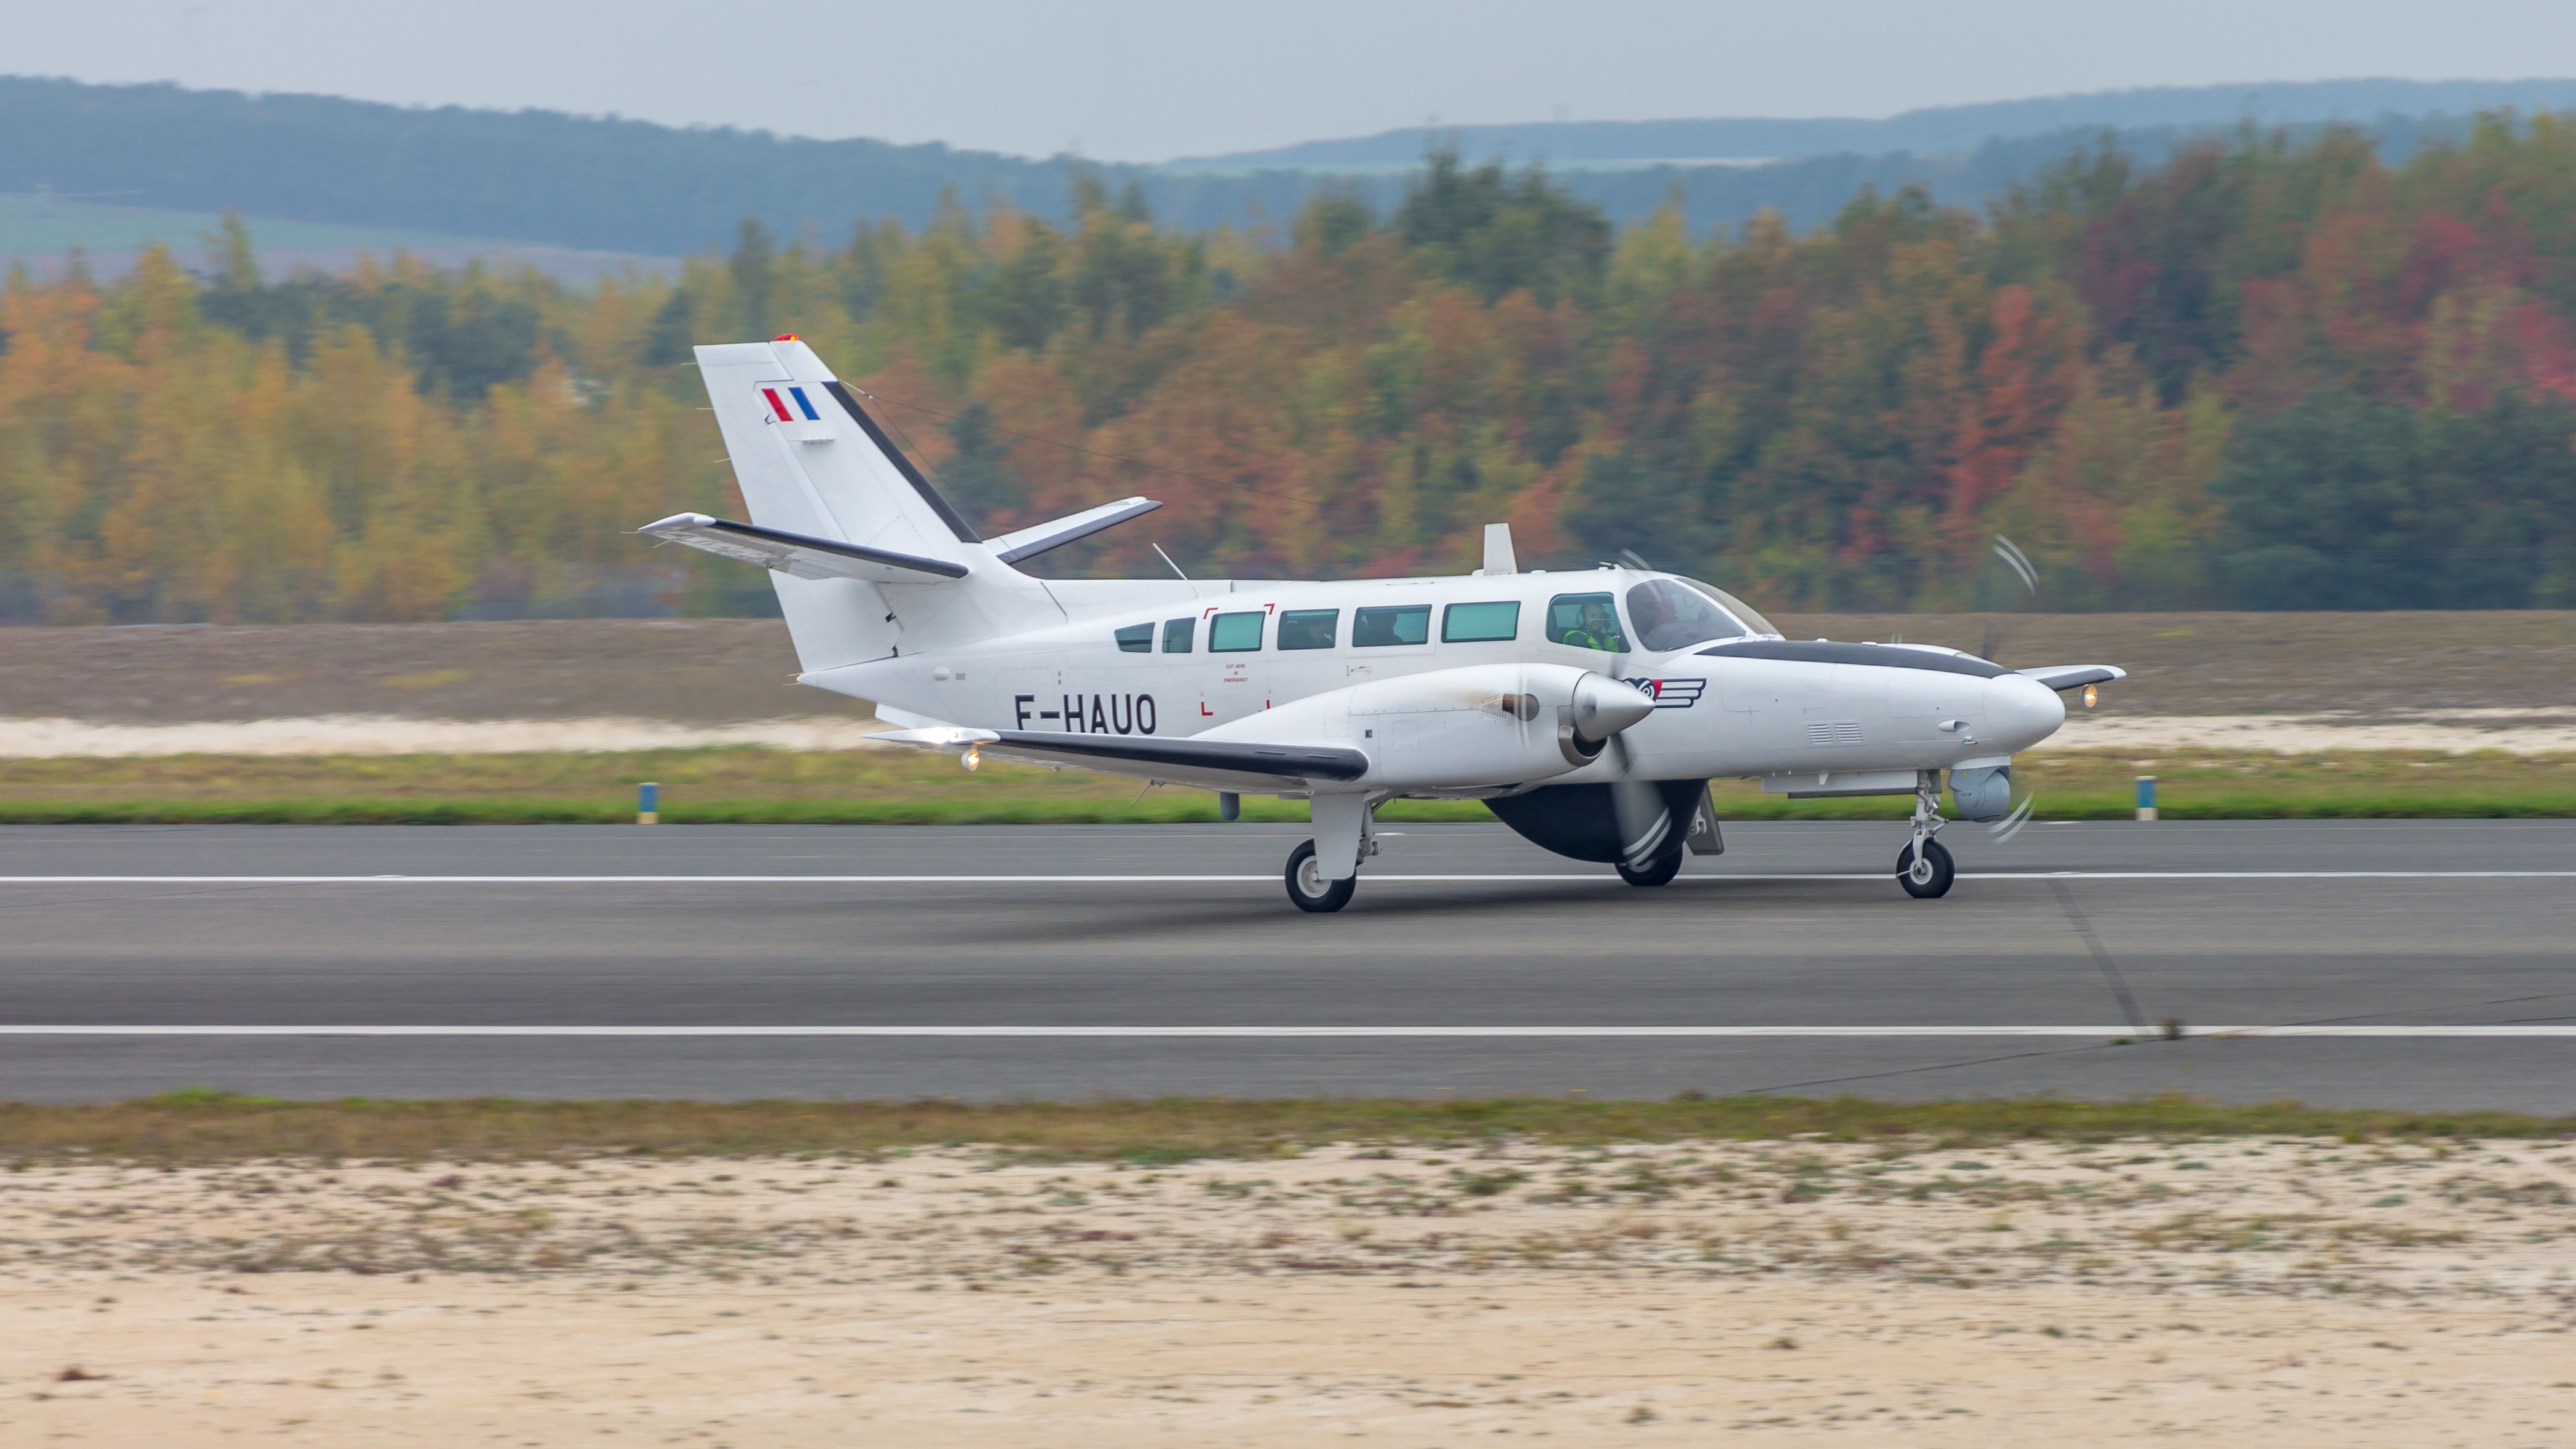 Cessna F406 Vigilant (F-HAUO)